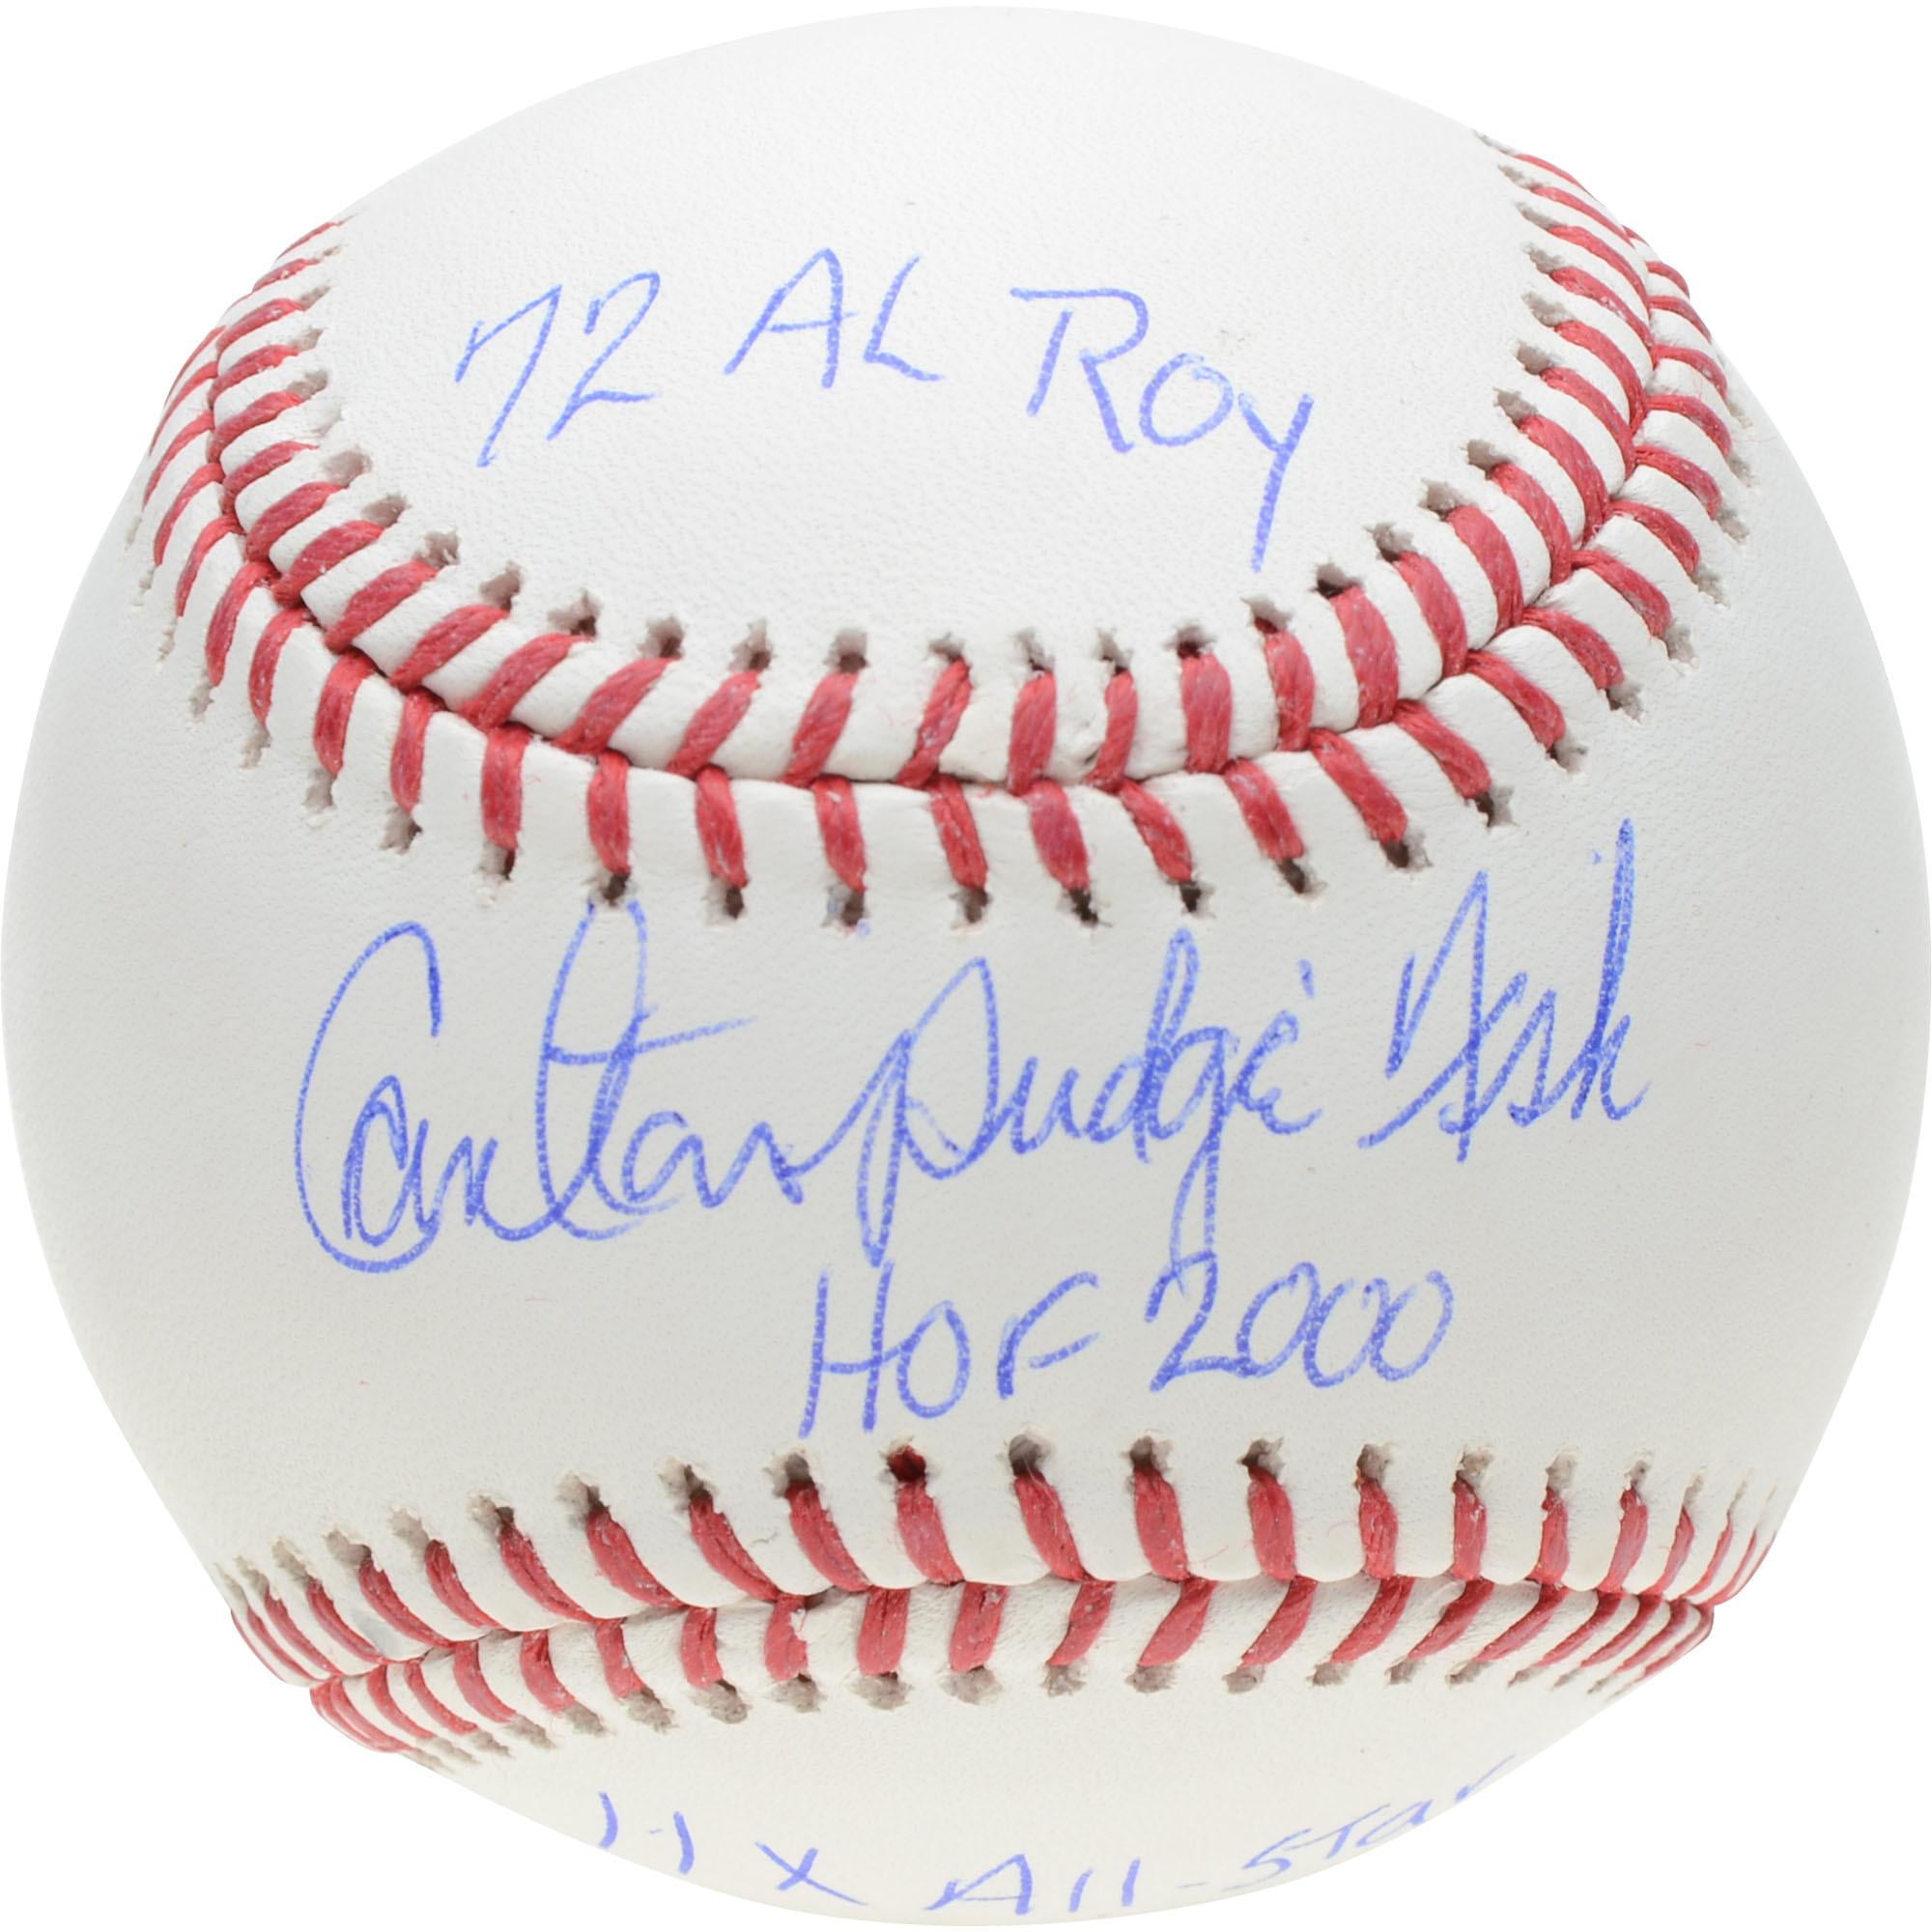 carlton fisk autographed baseball